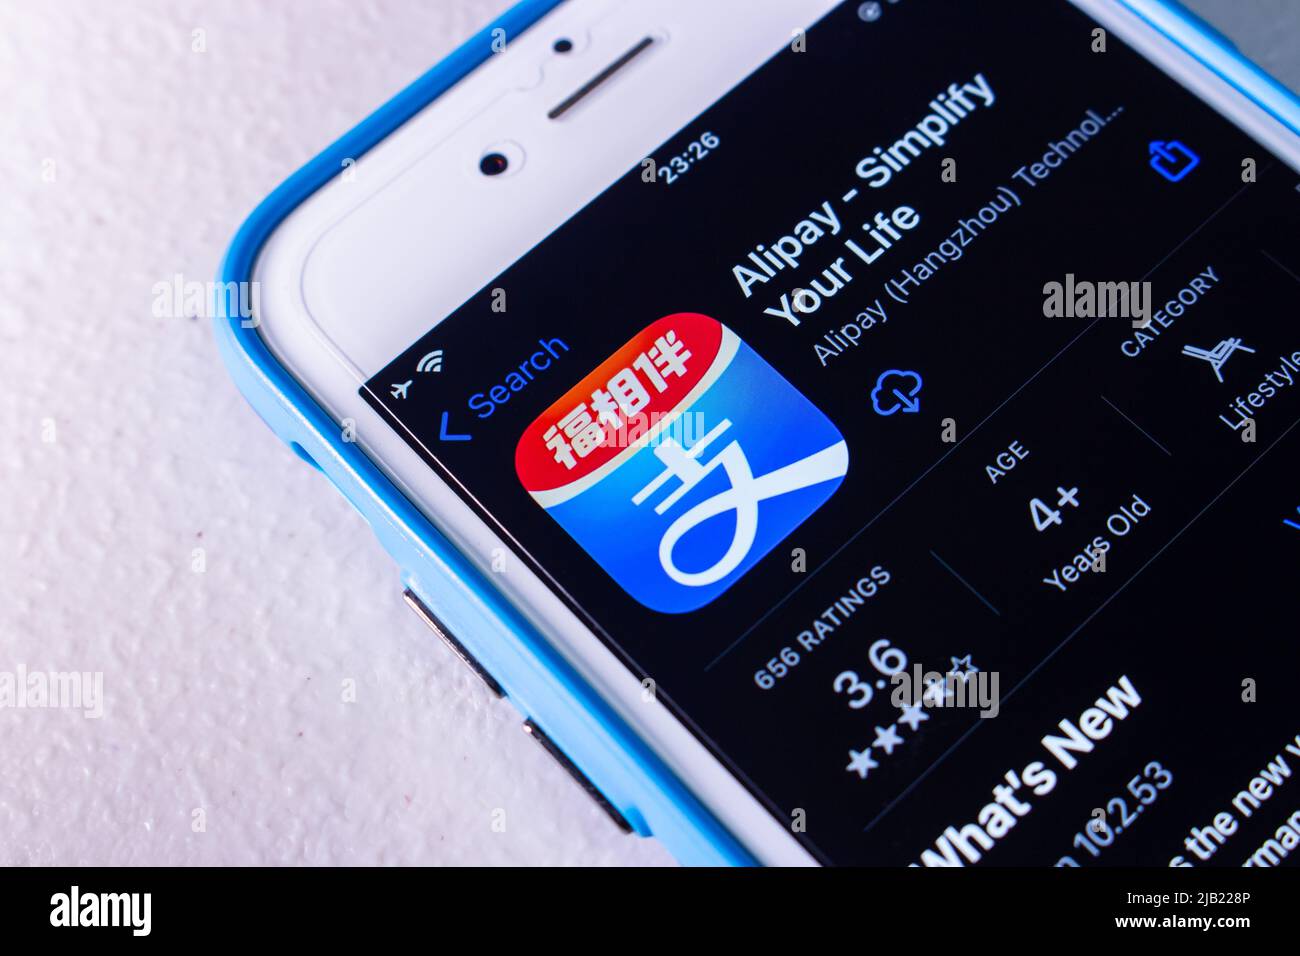 Kumamoto, JAPON - Jan 20 2022 : logo d'Alibag, une plate-forme chinoise de paiement mobile et en ligne établie par Alibaba Group, dans l'App Store sur iPhone. Banque D'Images